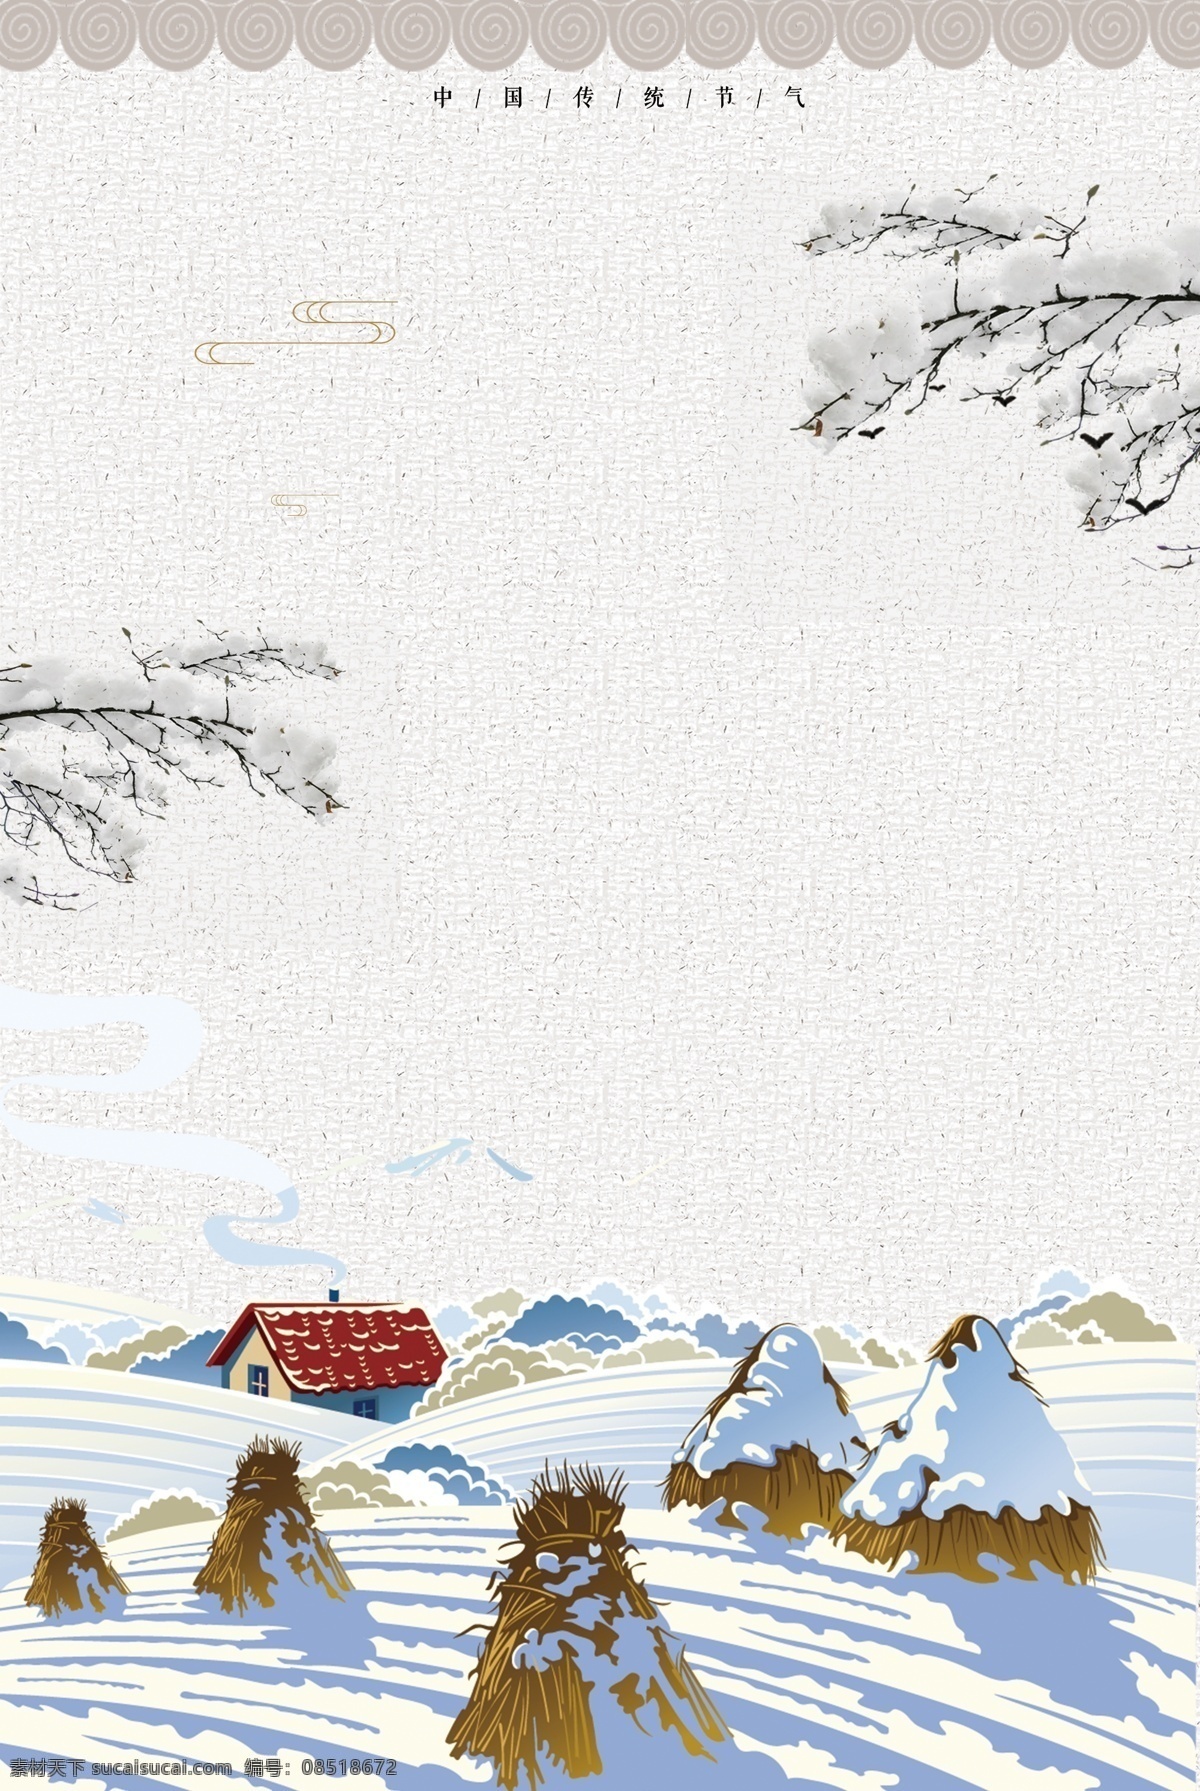 中国 风 彩绘 冬雪 大雪 背景 雪地 海报背景 中国风 背景设计 雪景 稻草堆 下雪 传统 节气 24节气 冬季大雪 大寒背景